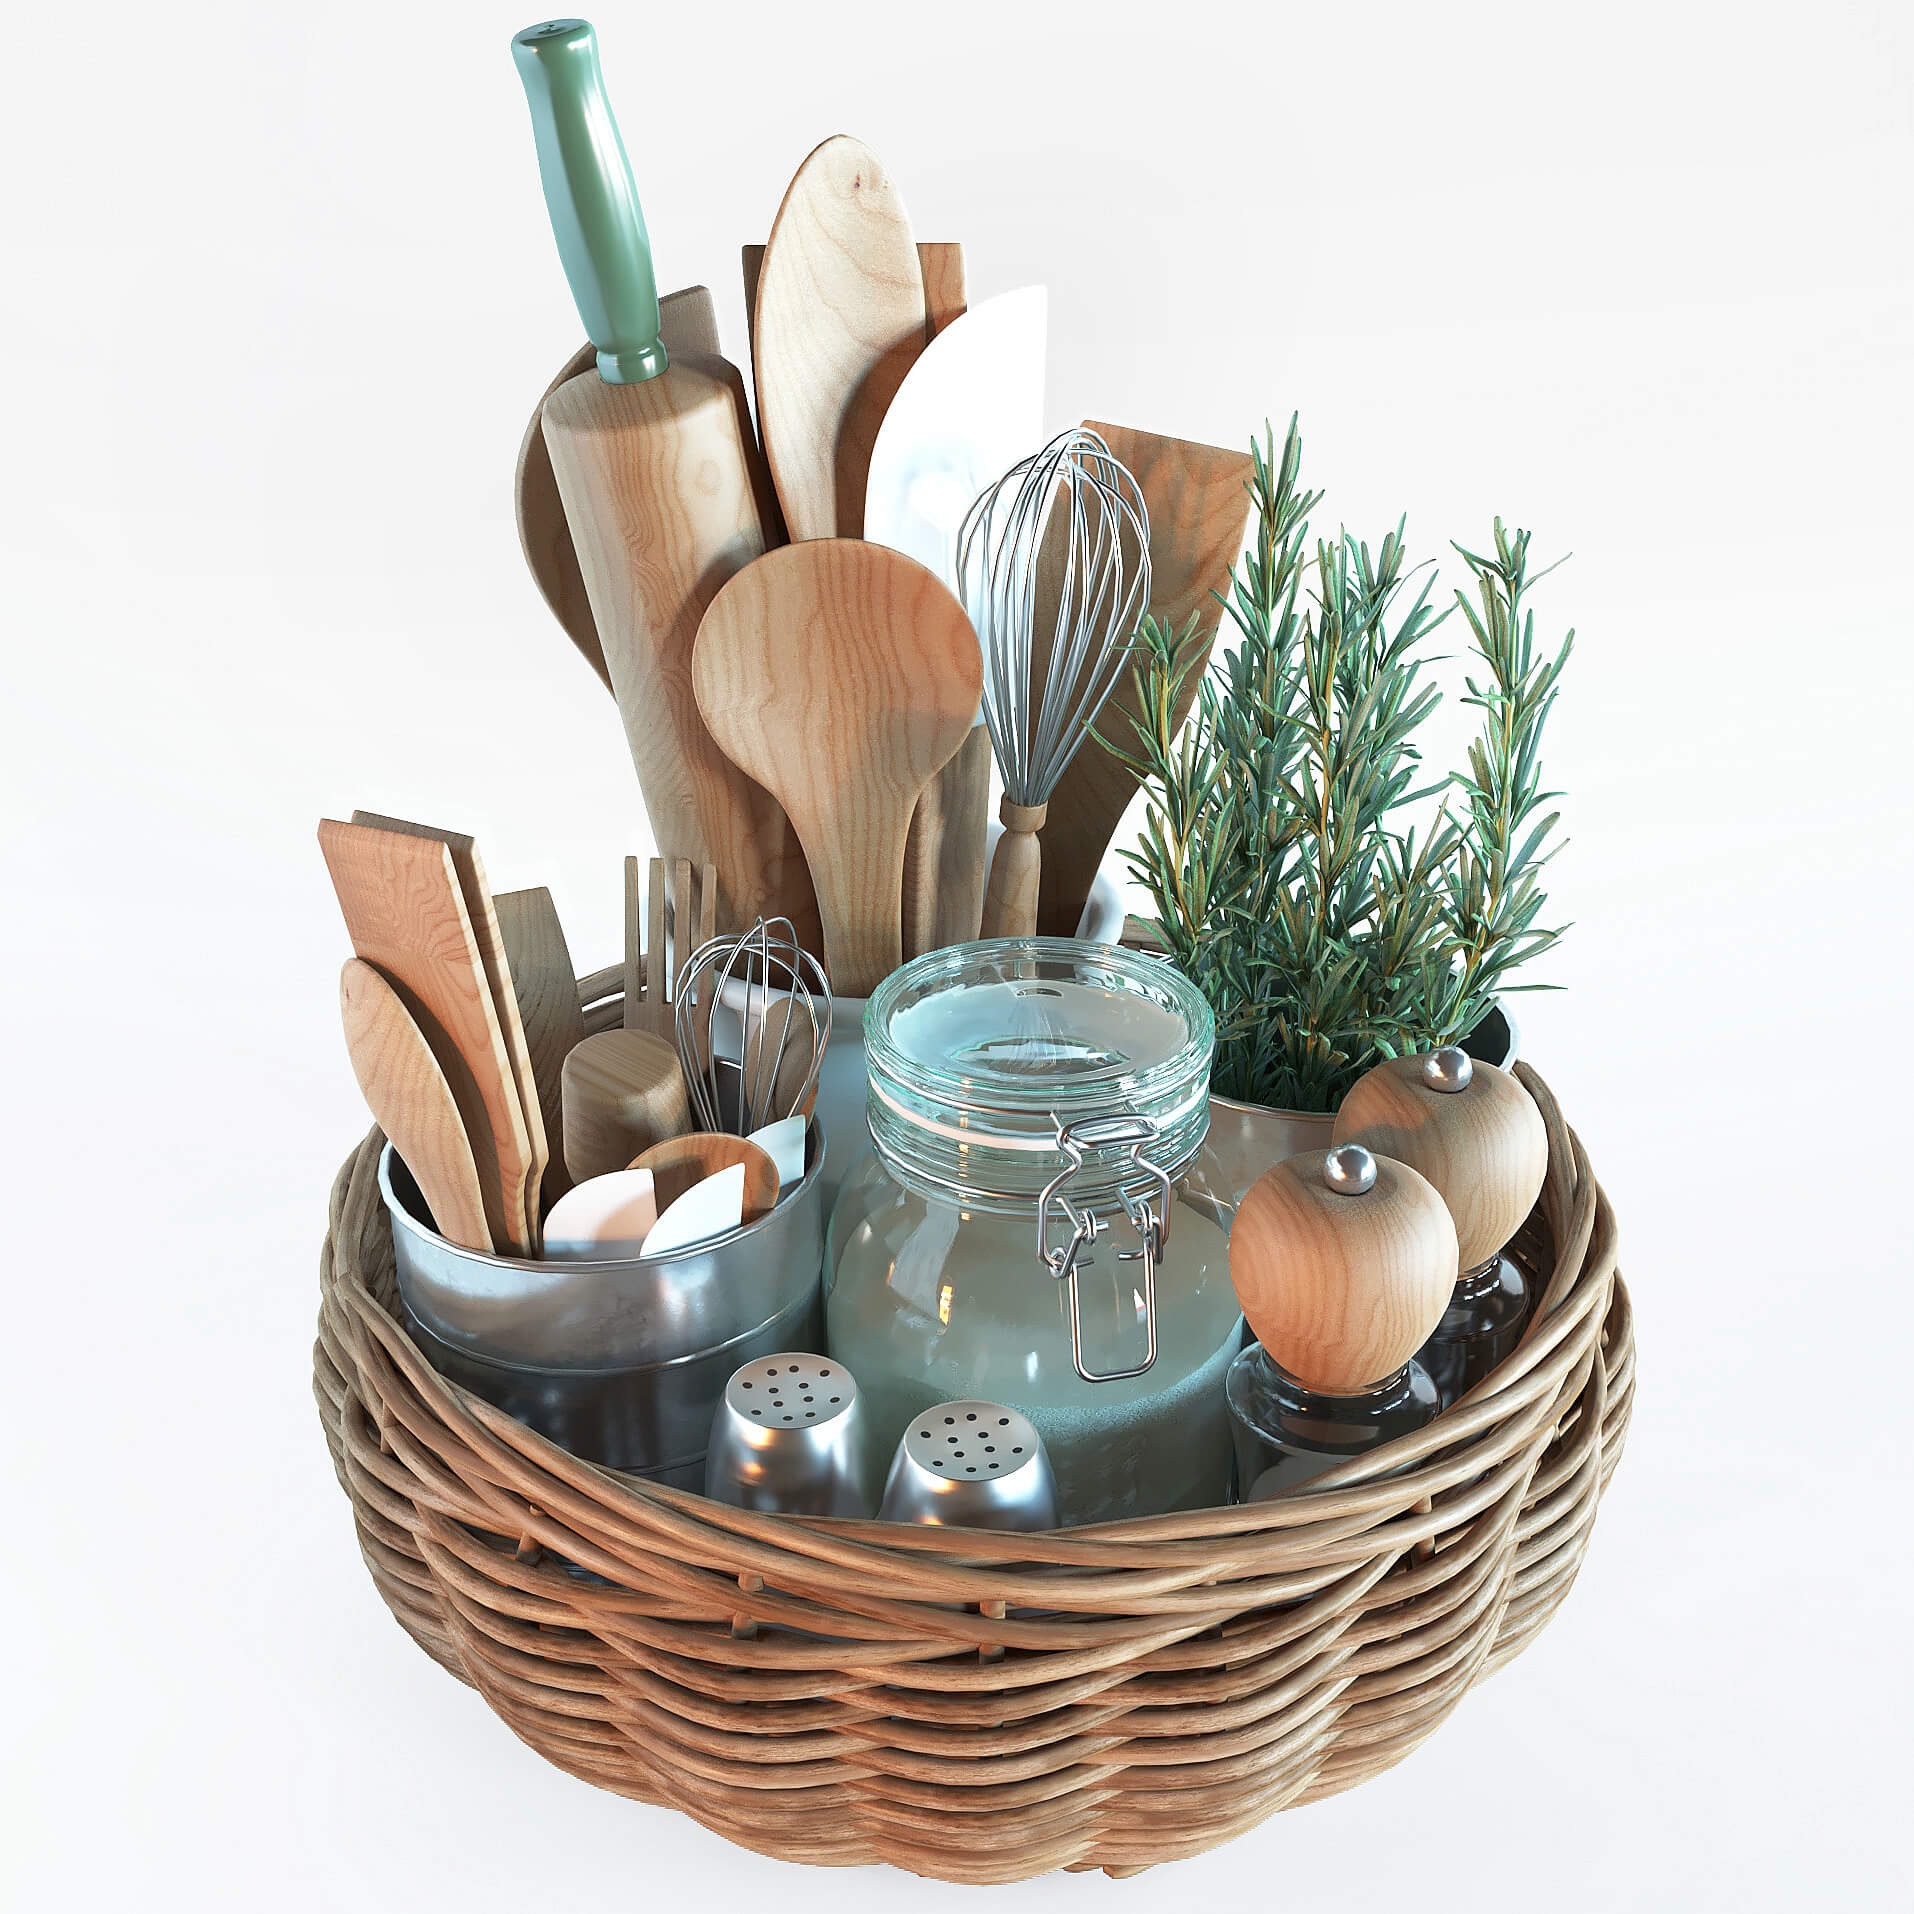 Decorative set / Other kitchen accessories 1